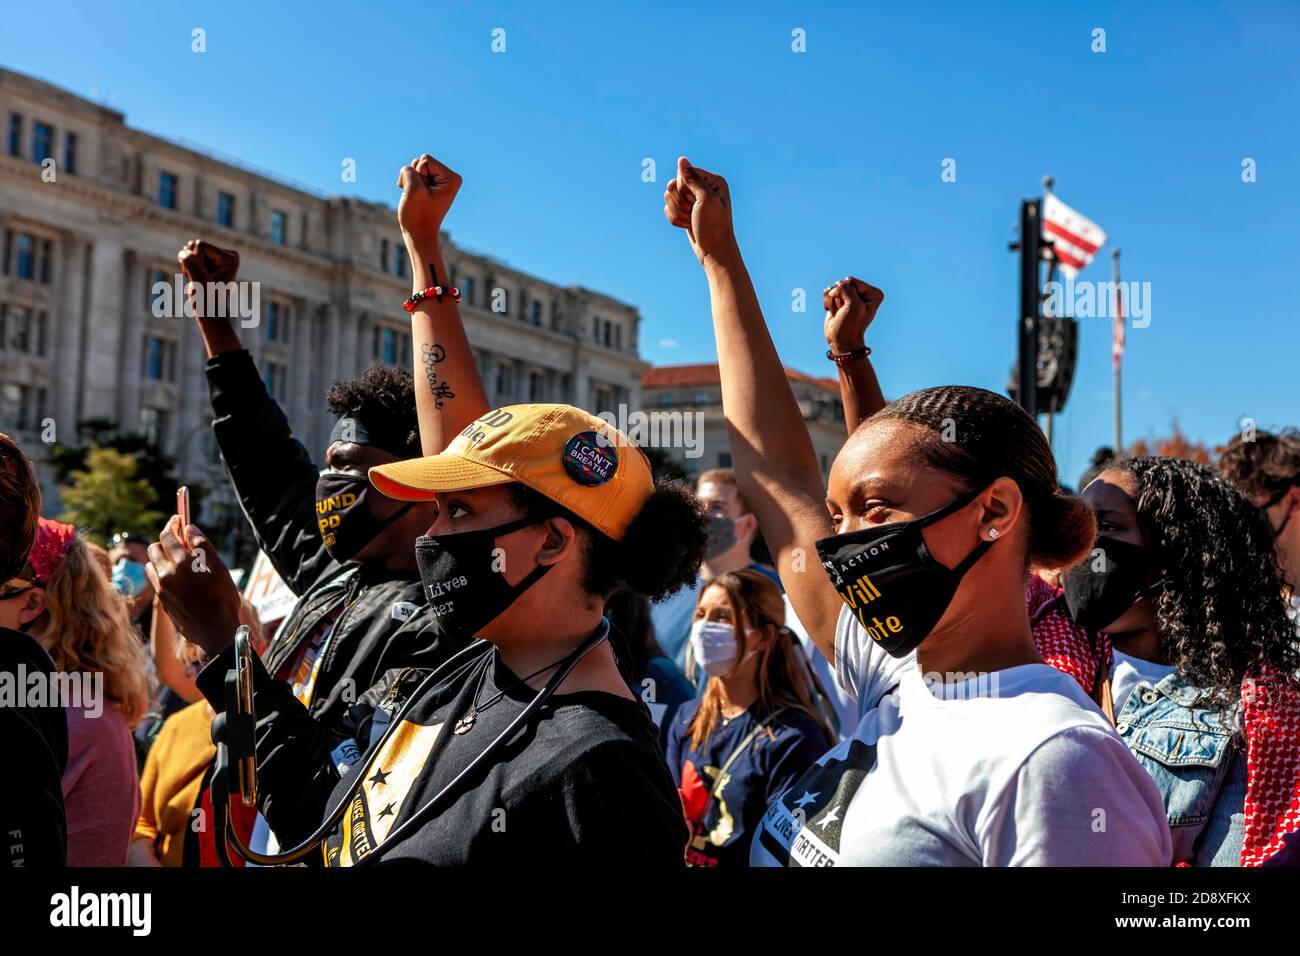 Gli attivisti anti-razzismo sollevano i loro pugni in solidarietà, mentre Nee Nee Taylor della Black Lives Matter DC si rivolge alla folla, Washington, DC, USA Foto Stock